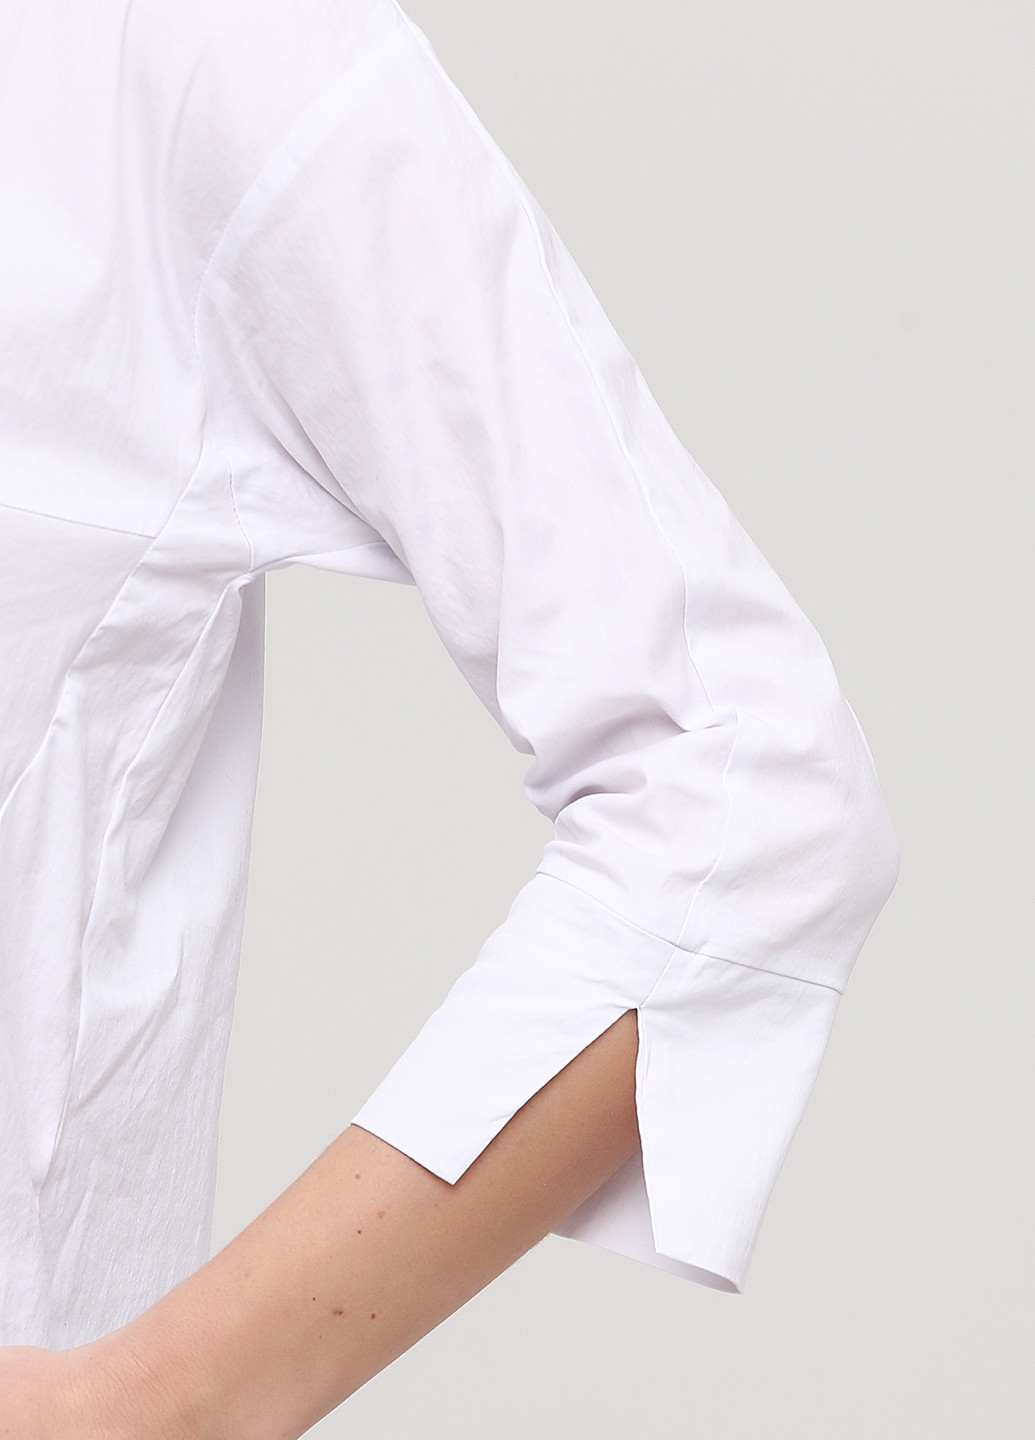 Белая классическая рубашка однотонная Betty & Co